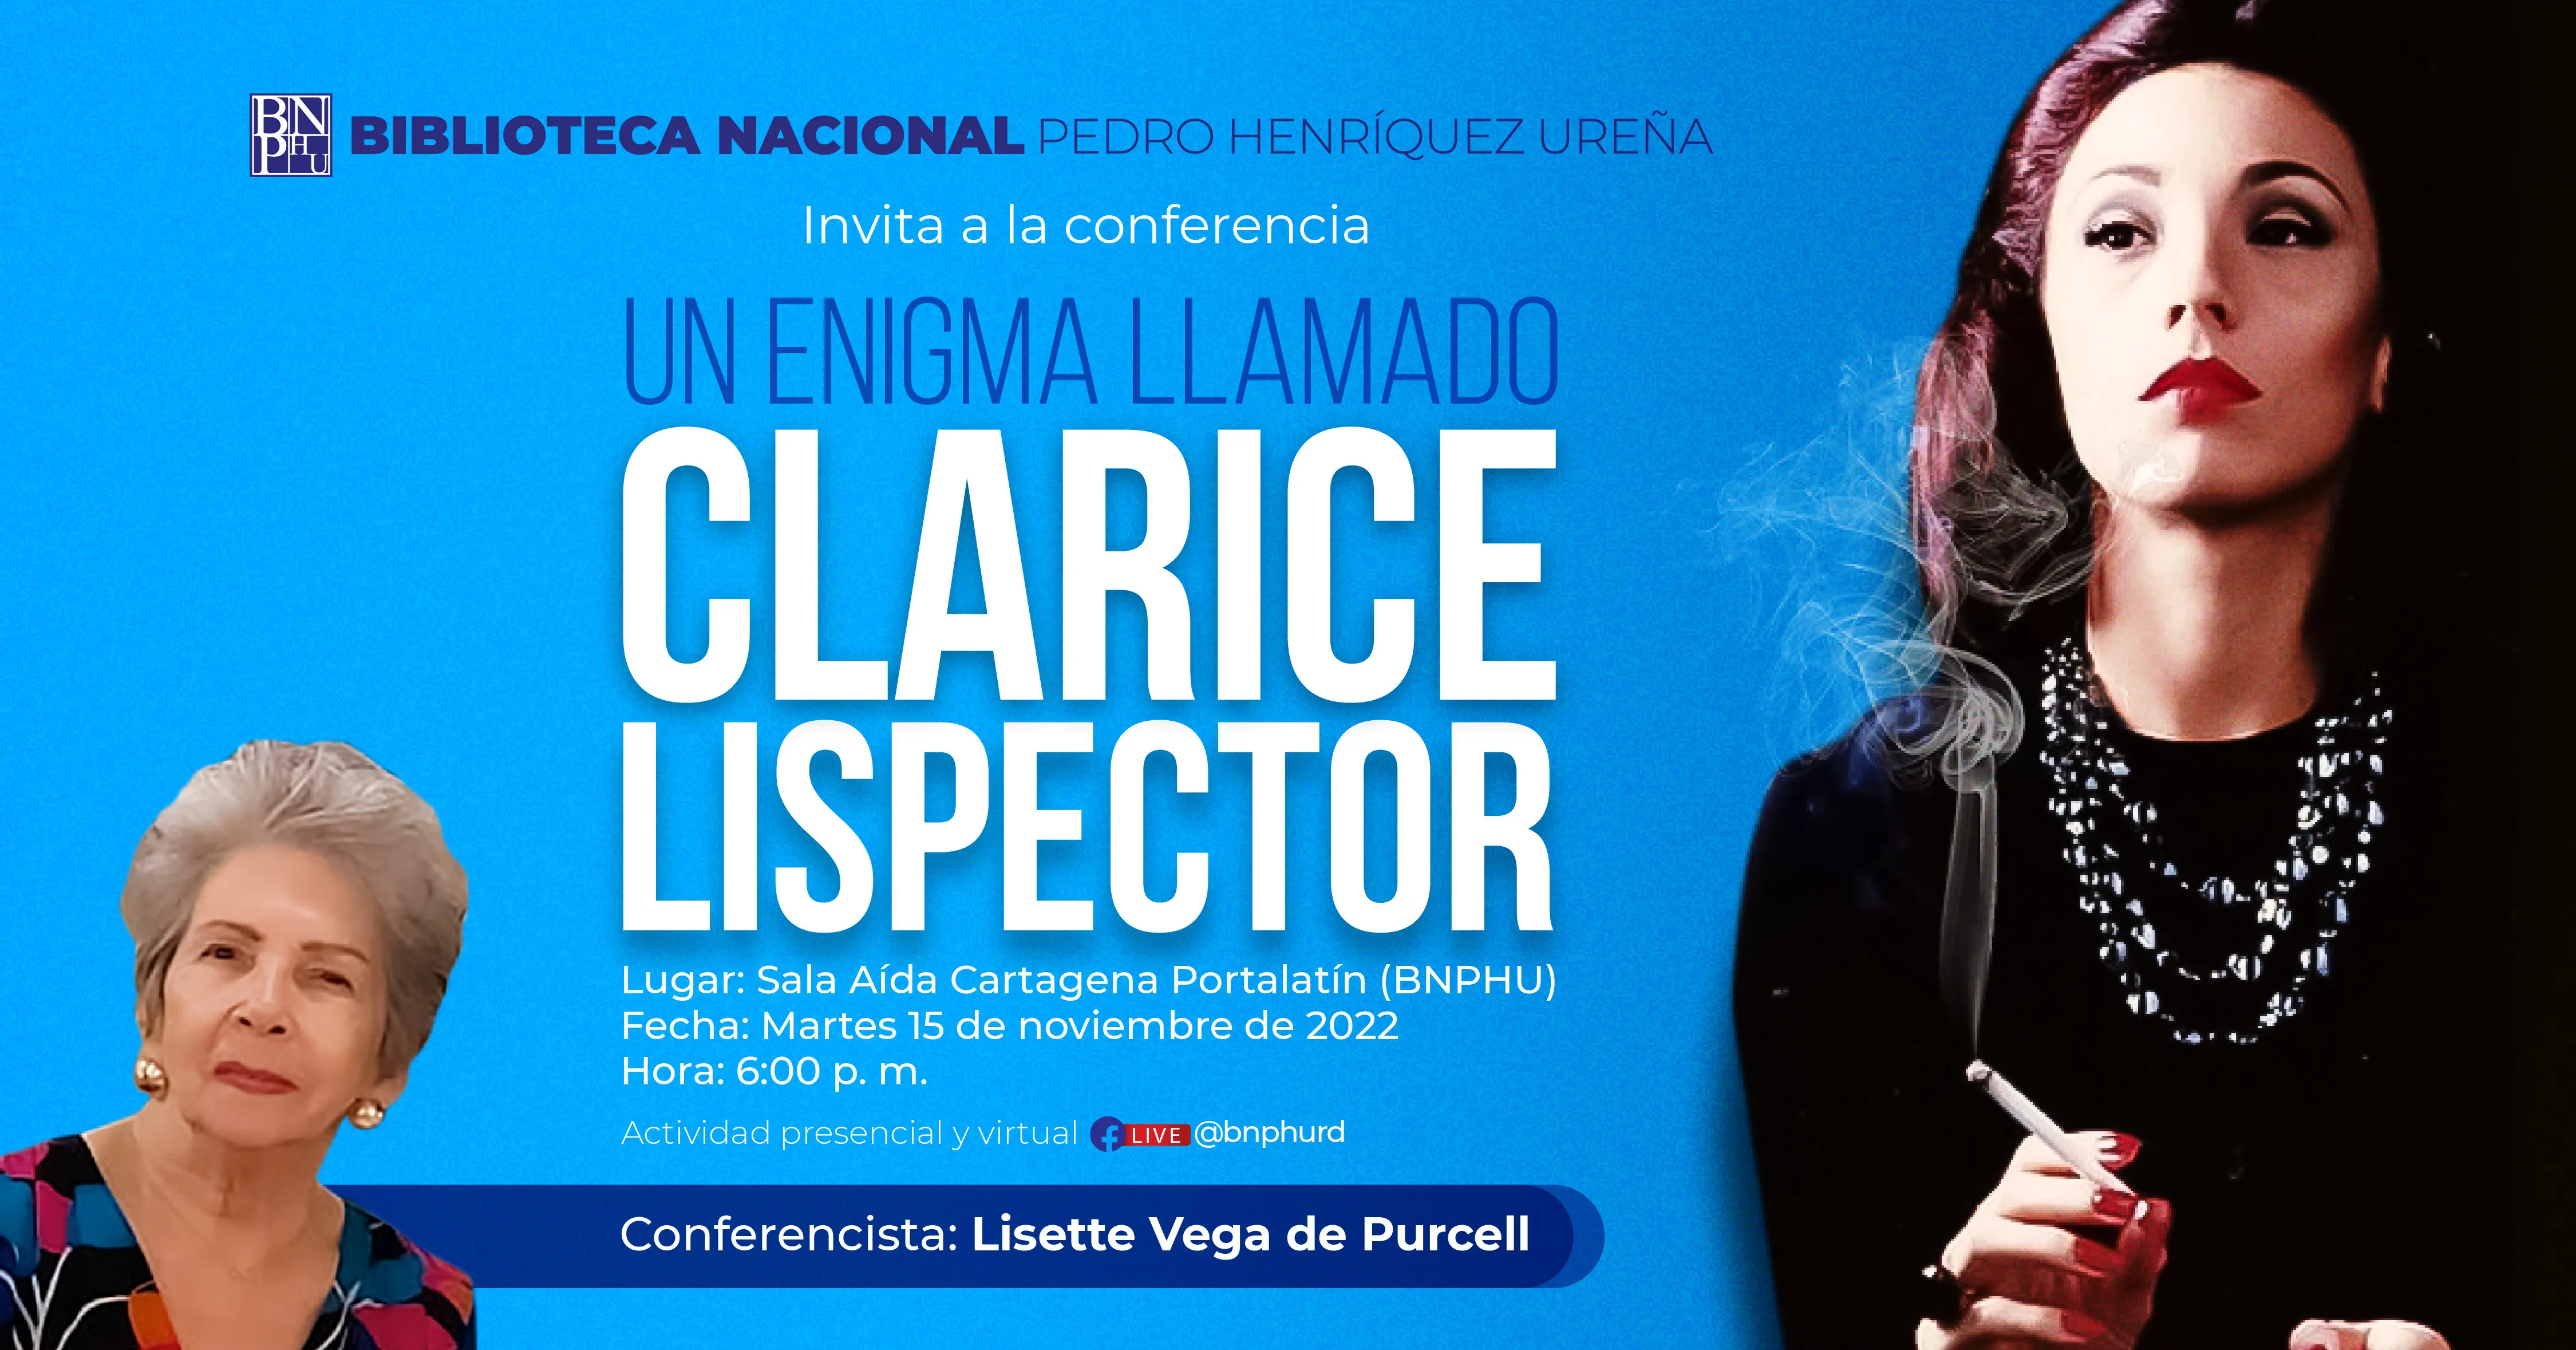 Biblioteca Nacional auspiciará conferencia magistral “Un enigma llamado Clarice Lispector”